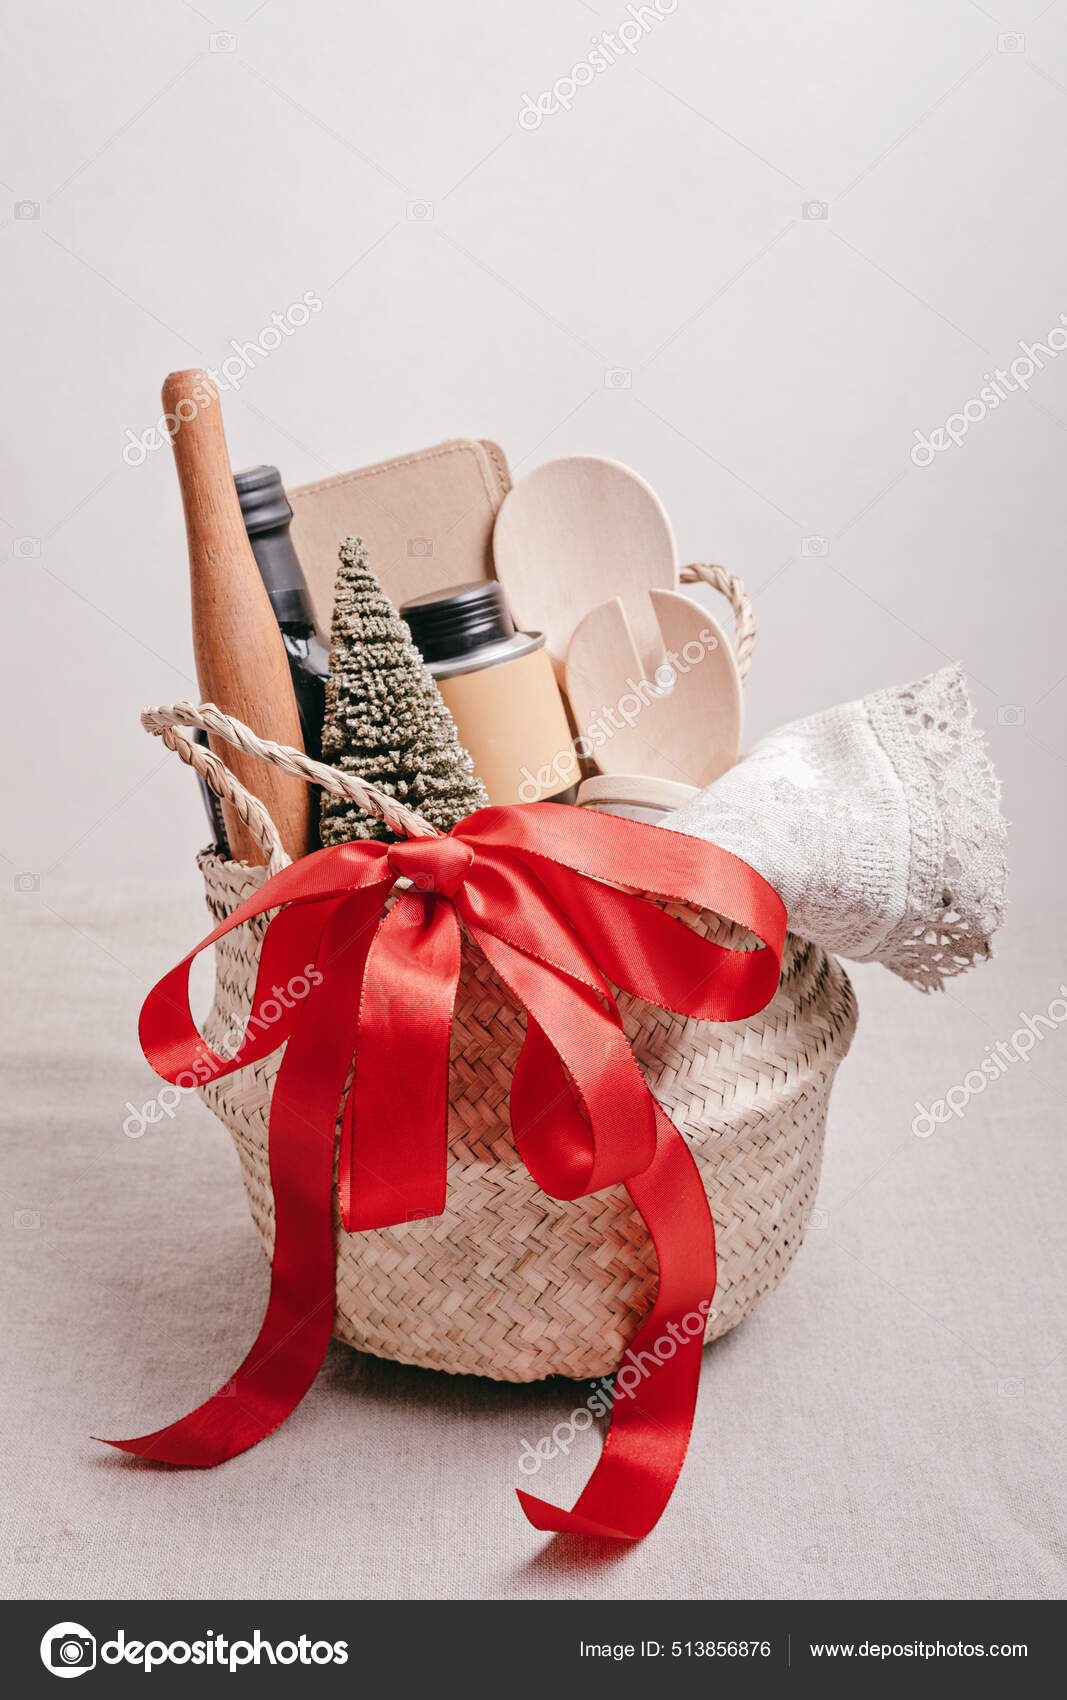 Kitchen Essentials Gift Basket